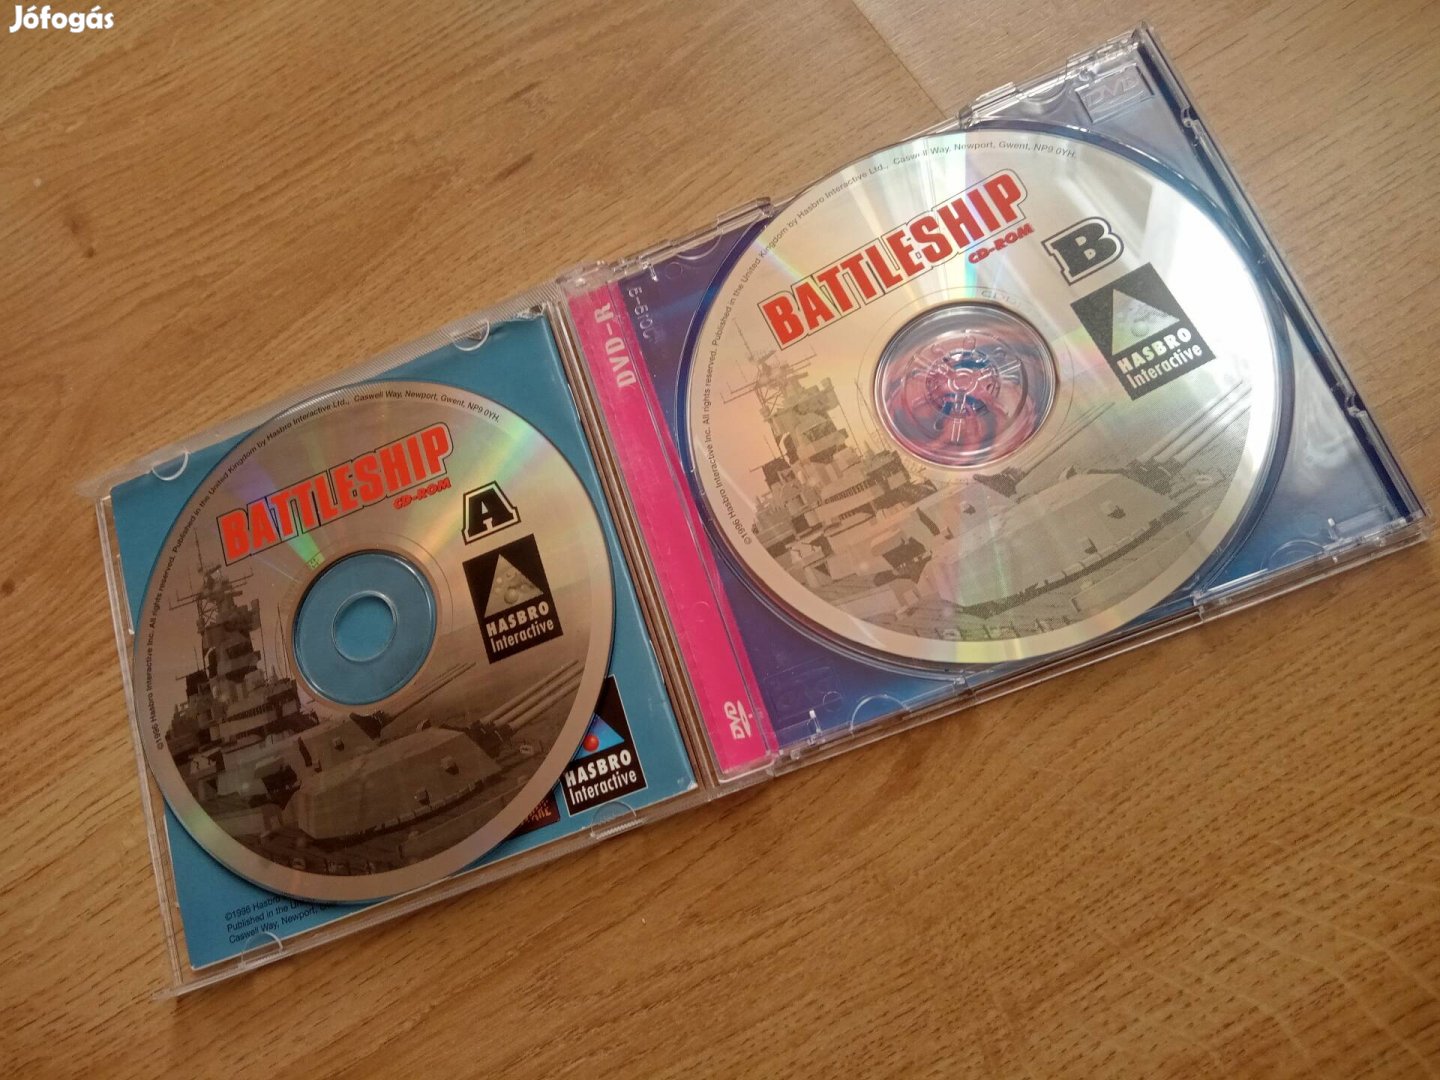 Battleship Számítógépes játék 2lemezes